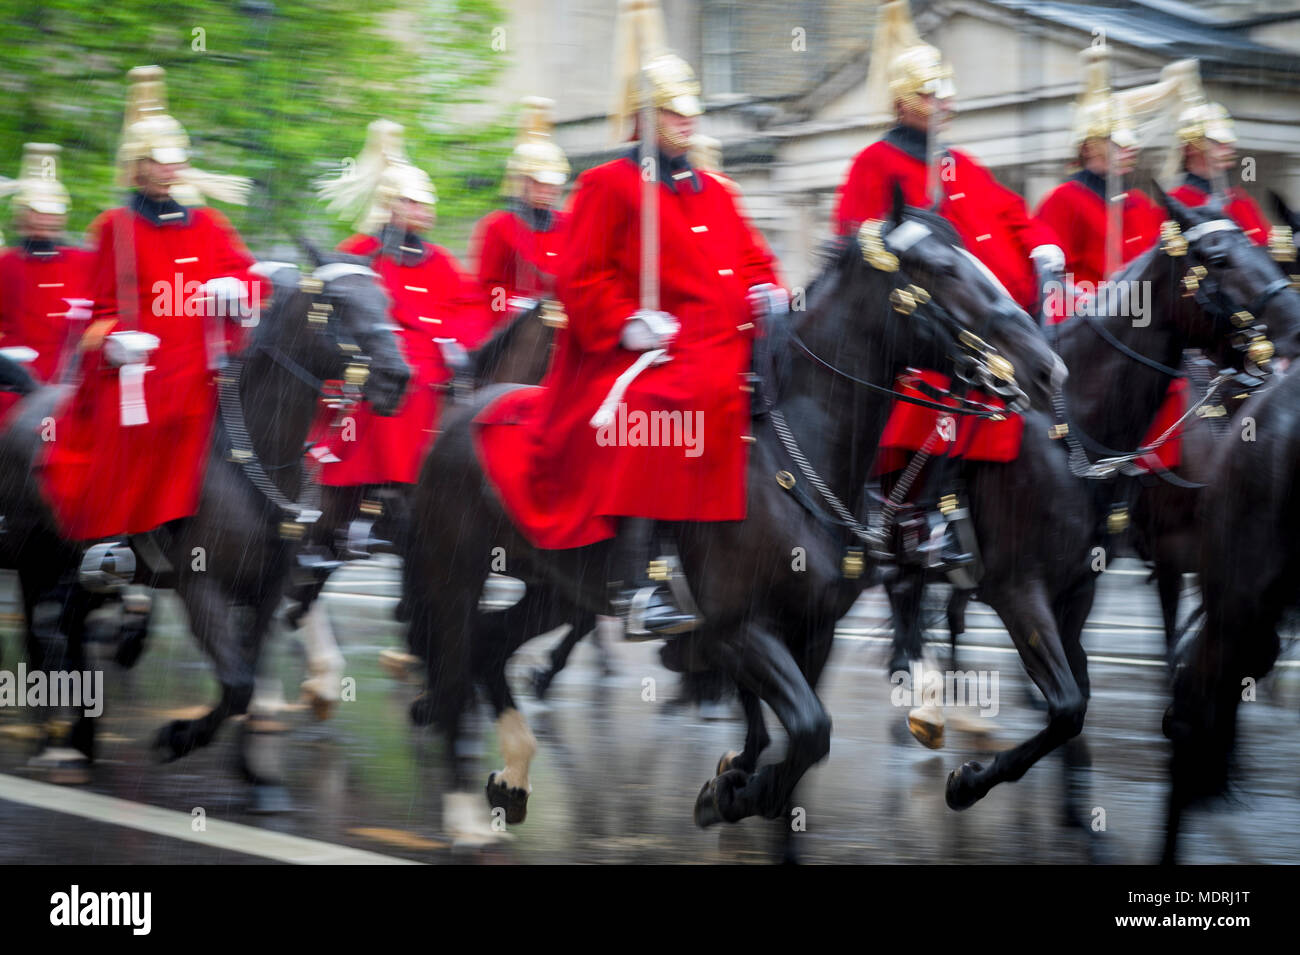 Guardia Reale a cavallo vestiti di rosso cerimoniale cappotti passano con motion blur in una sfilata in un giorno di pioggia a Londra, Inghilterra, Regno Unito. Girato con chiusura lento Foto Stock